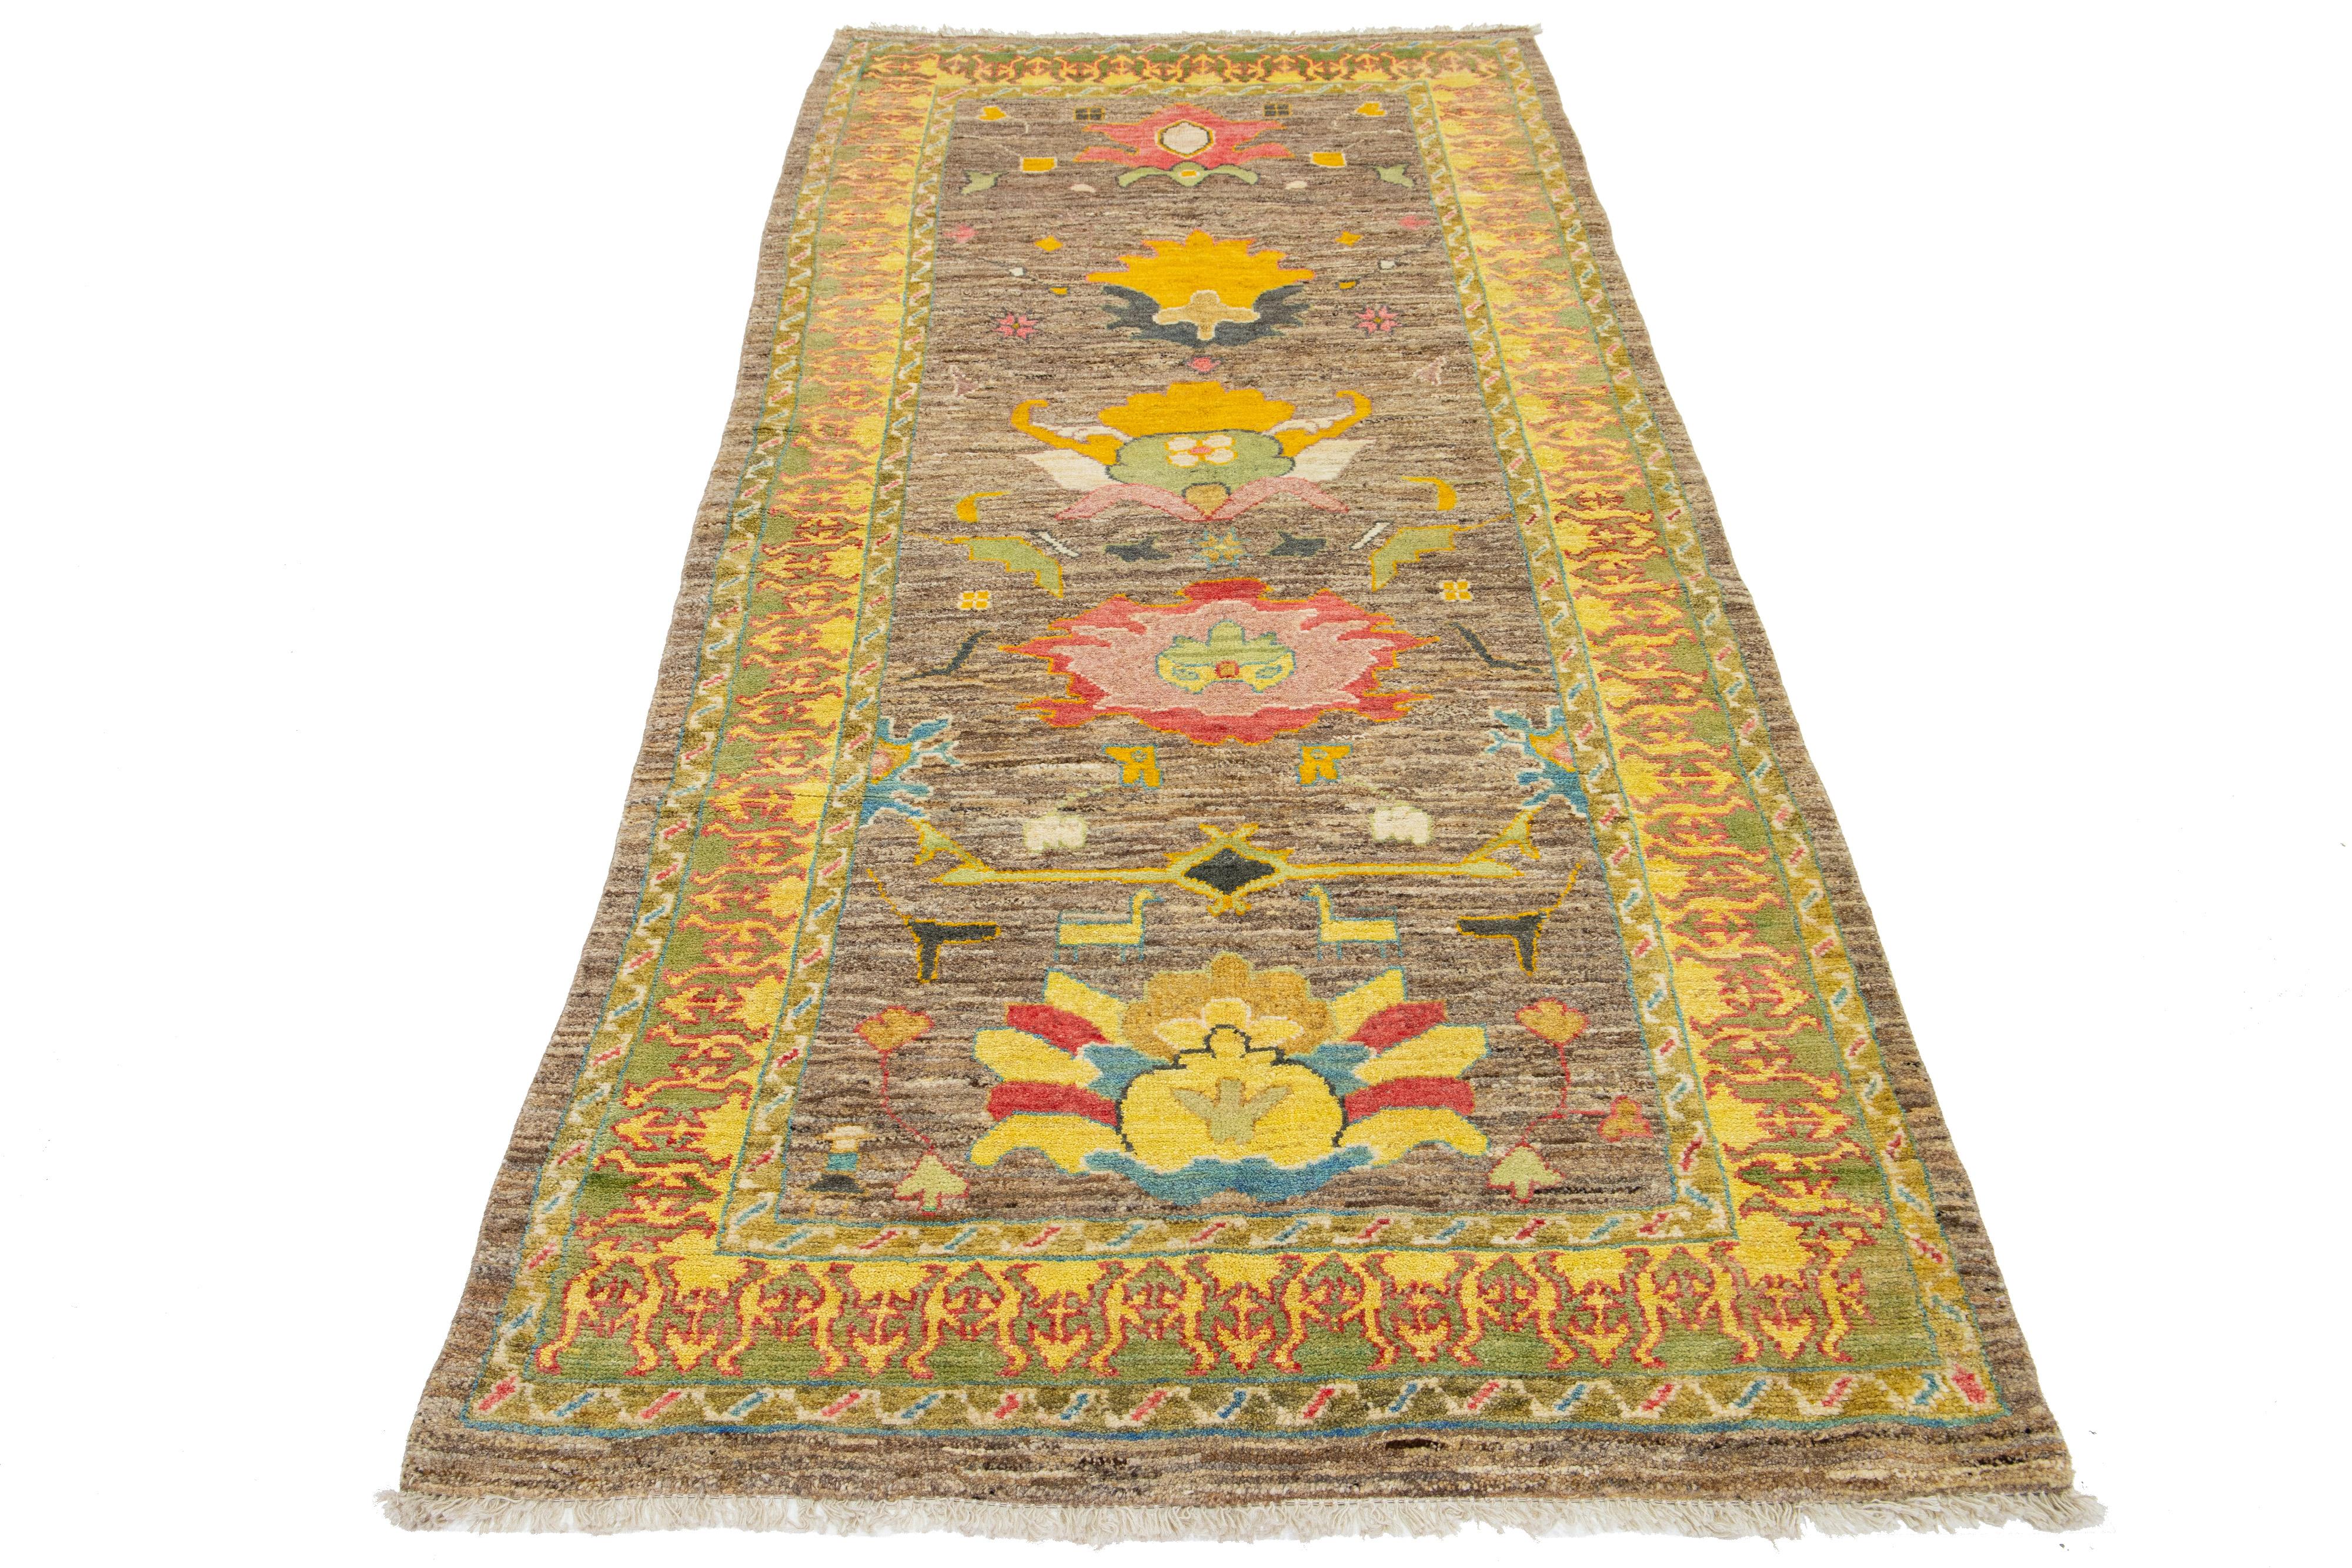 Ce tapis en laine noué à la main présente une belle base marron et un superbe motif floral aux accents jaunes, gris, rouges et verts éclatants. Il s'agit d'un ajout exquis à tout décor.

Ce tapis mesure 4'3